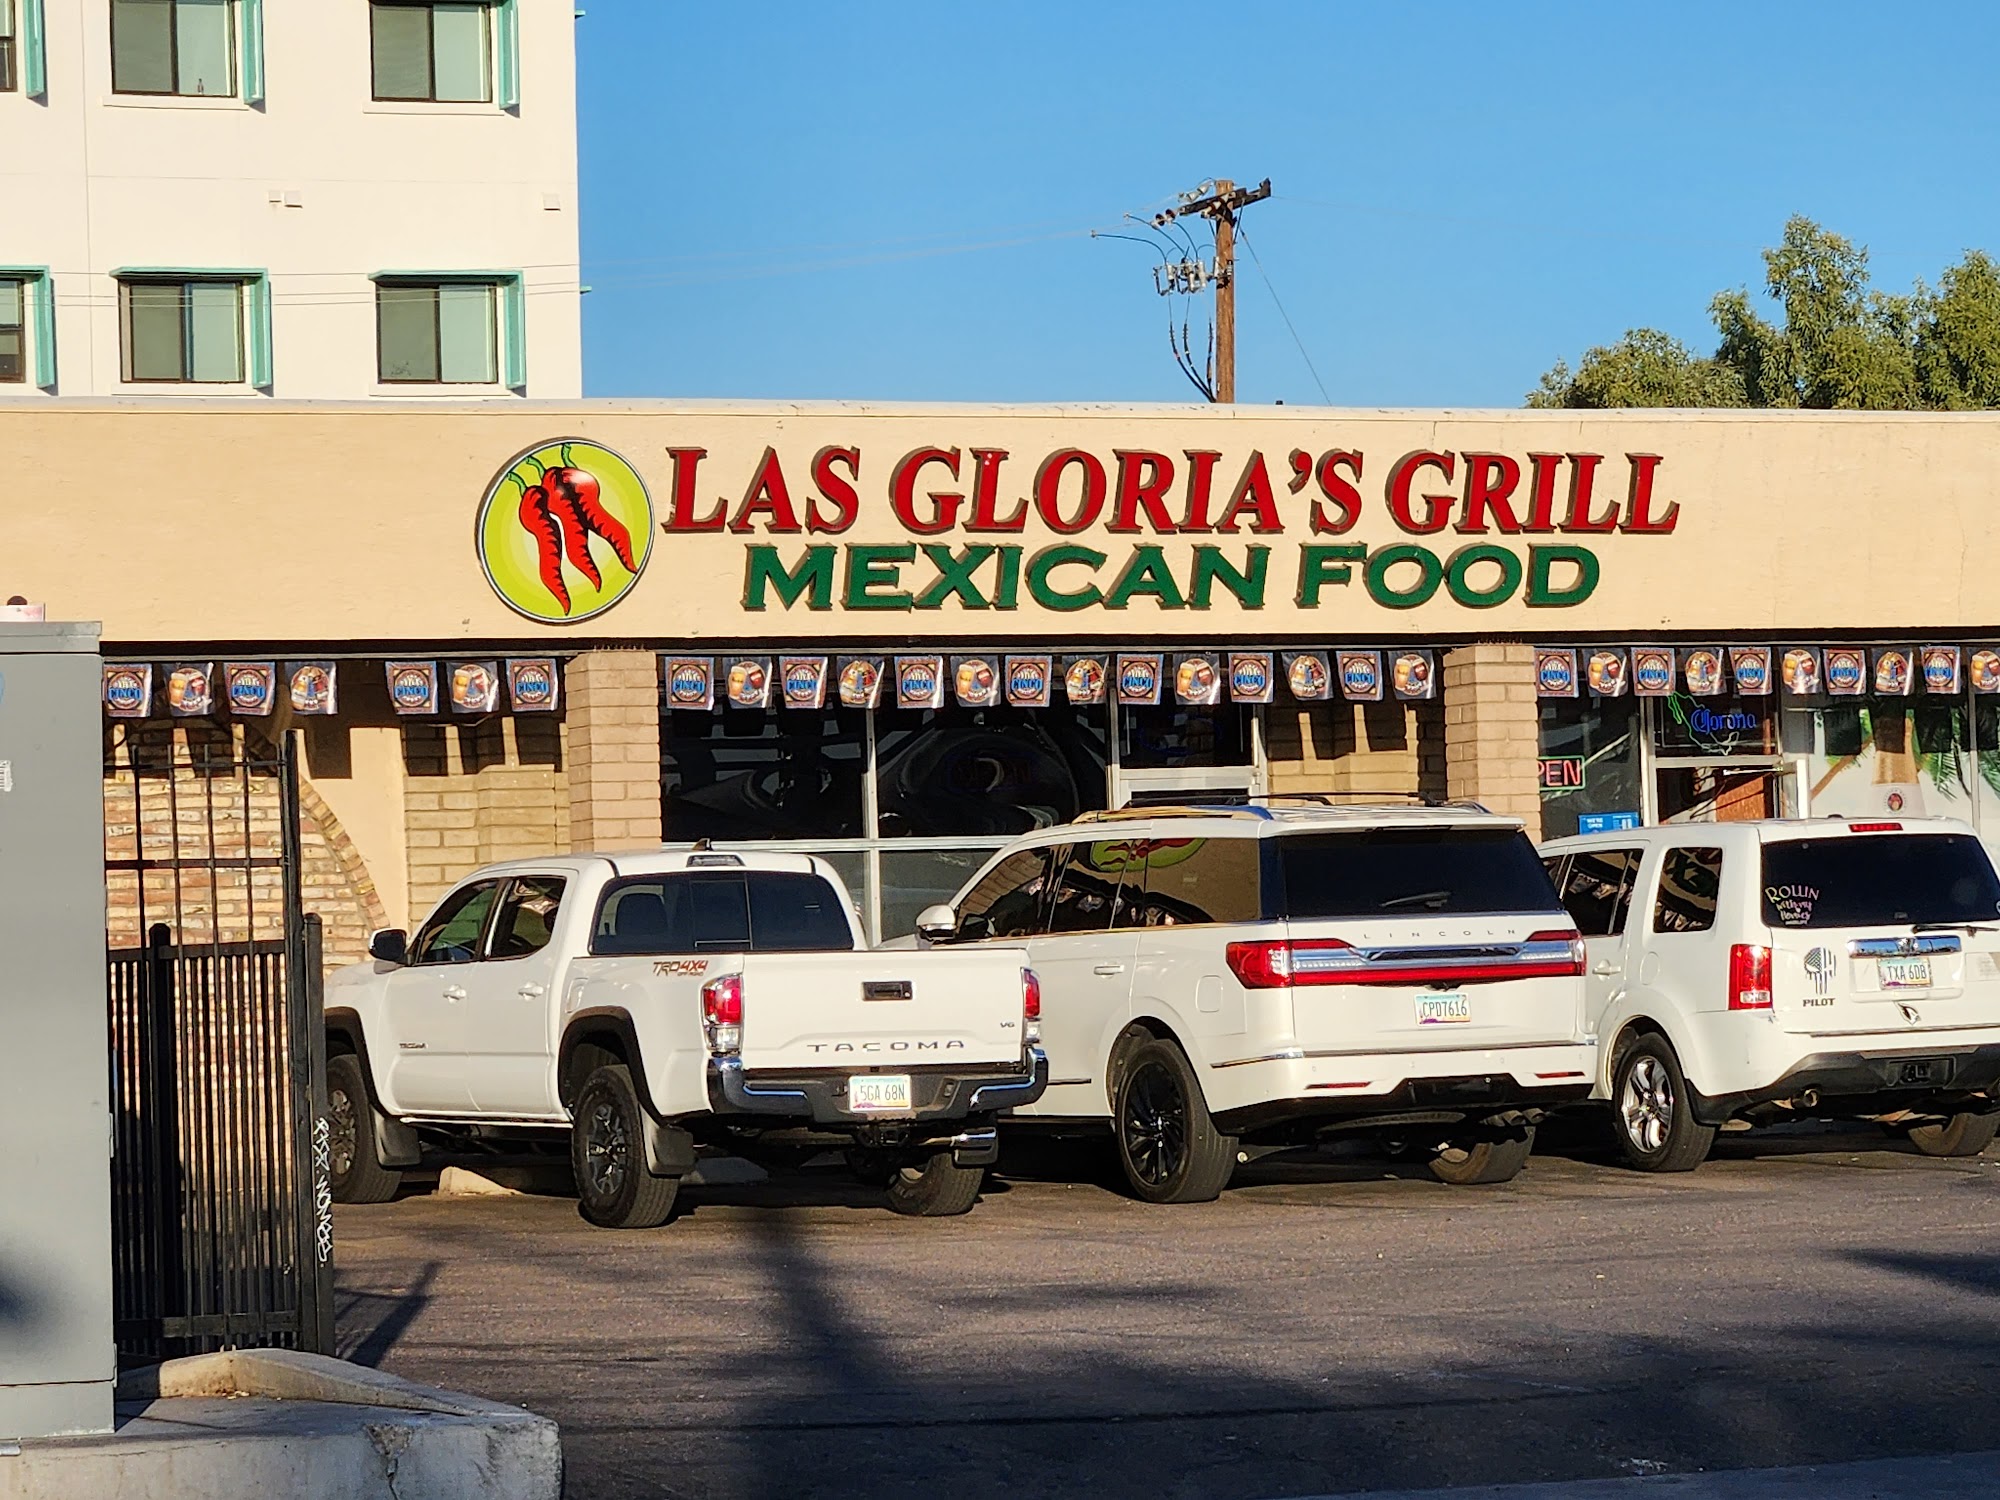 Las Glorias Grill